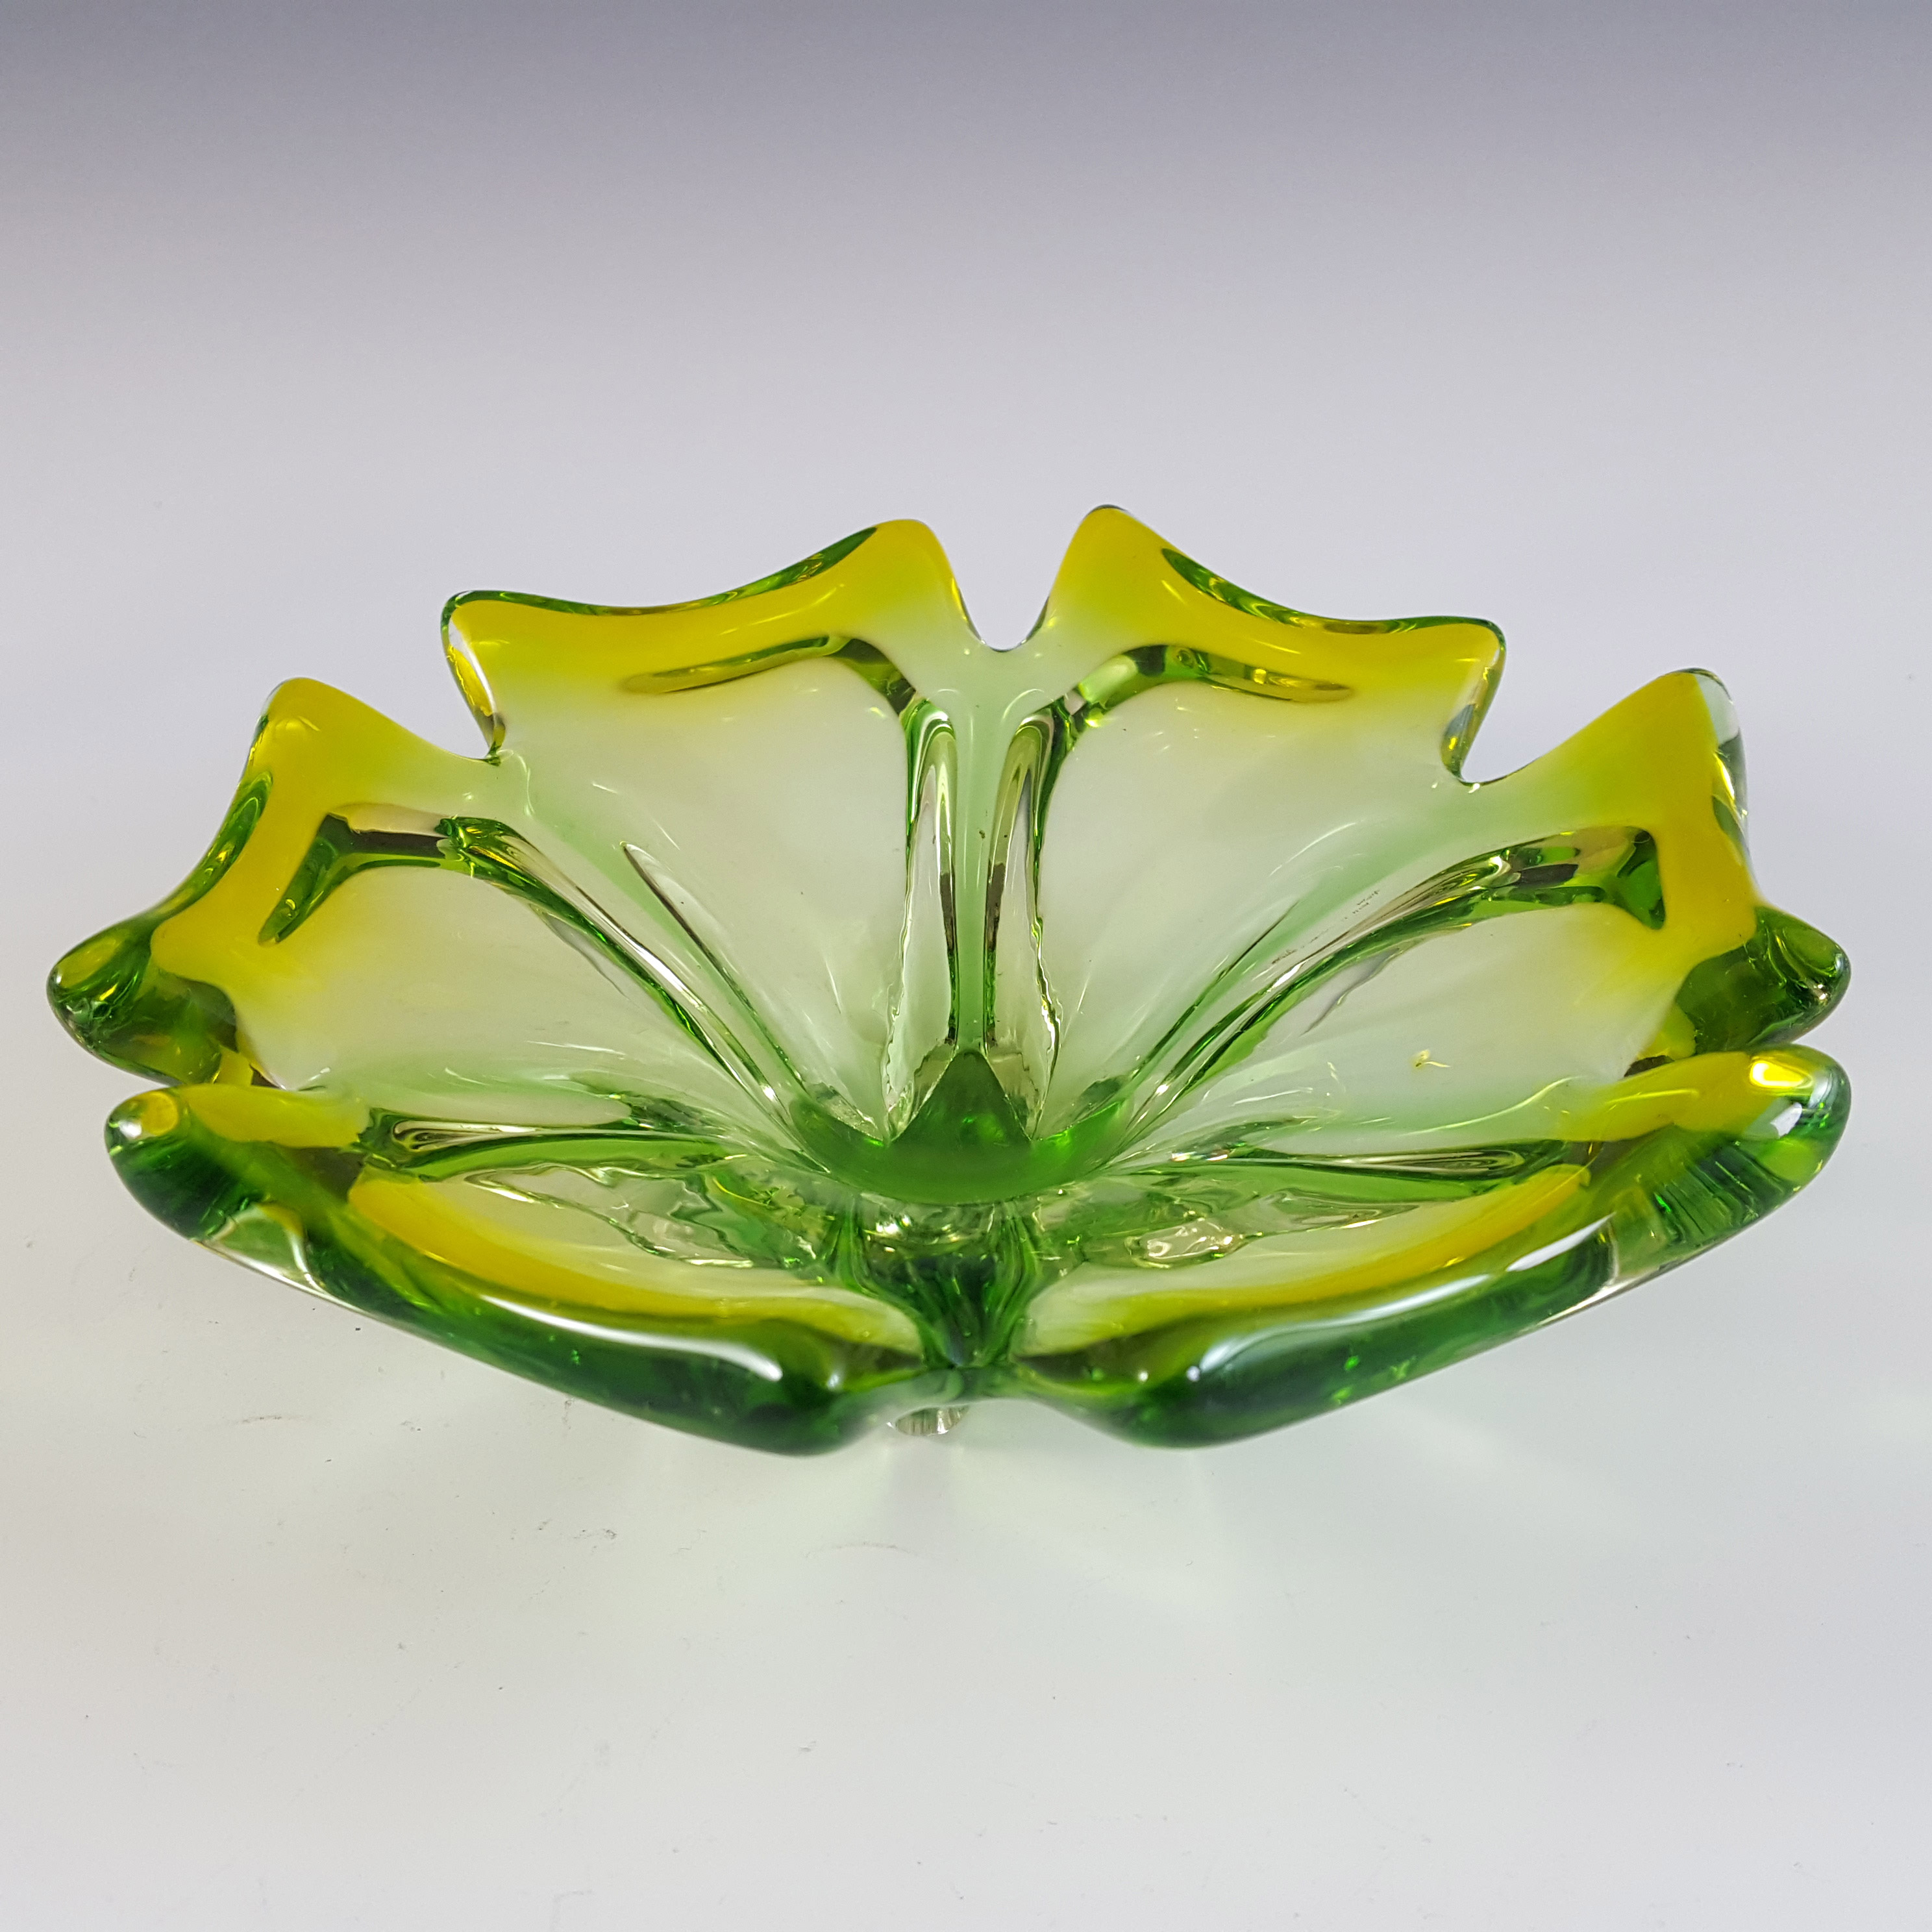 Cristallo Venezia Murano Green & Yellow Sommerso Glass Vintage Bowl - Click Image to Close